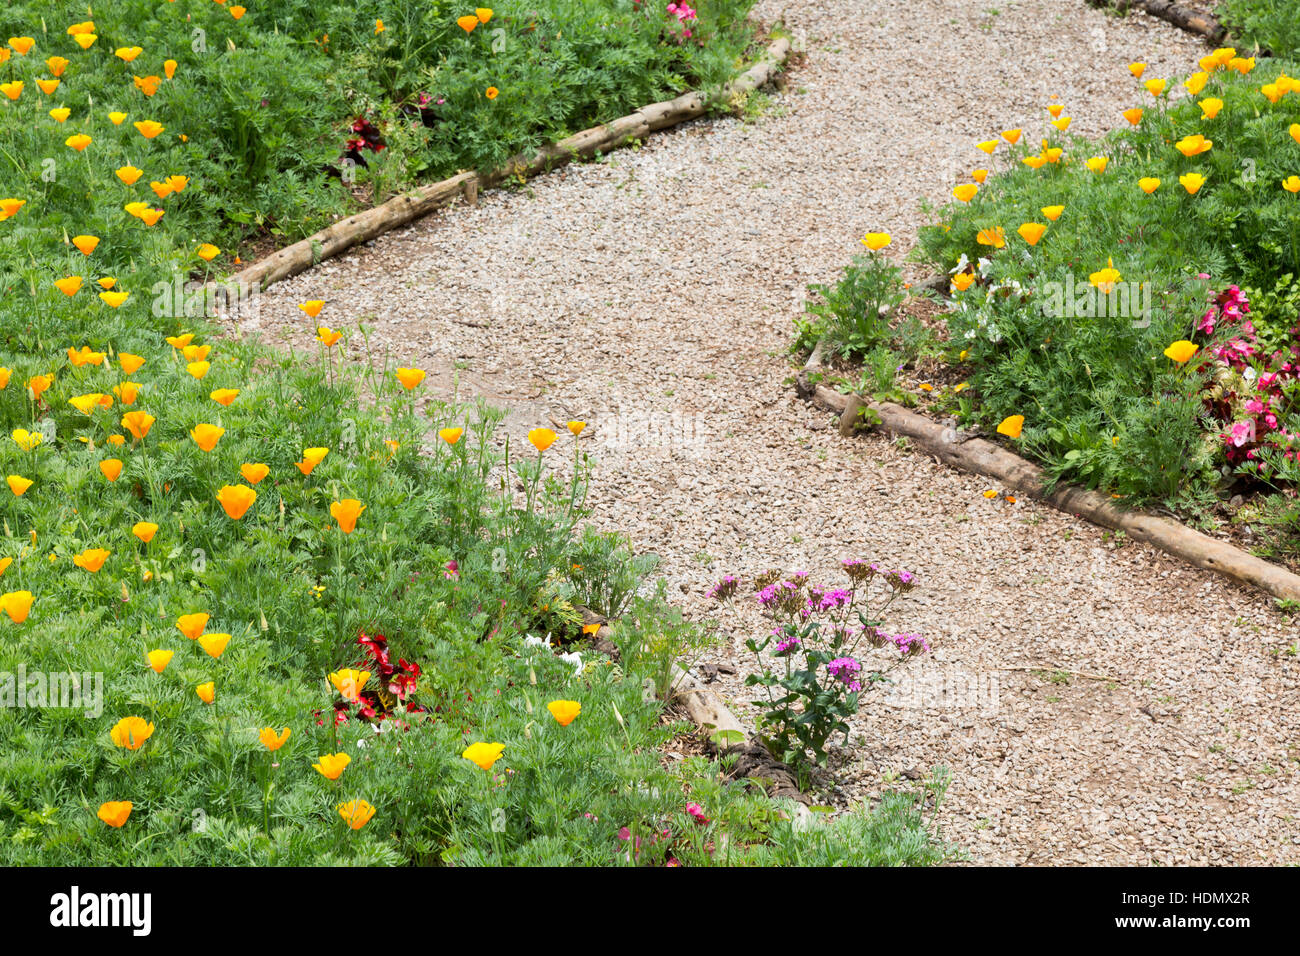 Pavot de Californie (Eschscholzia californica), alias golden poppy, la lumière du soleil de la Californie, tasse d'or, le long chemin de jardin, Campos do Jordao, SP, BRÉSIL Banque D'Images